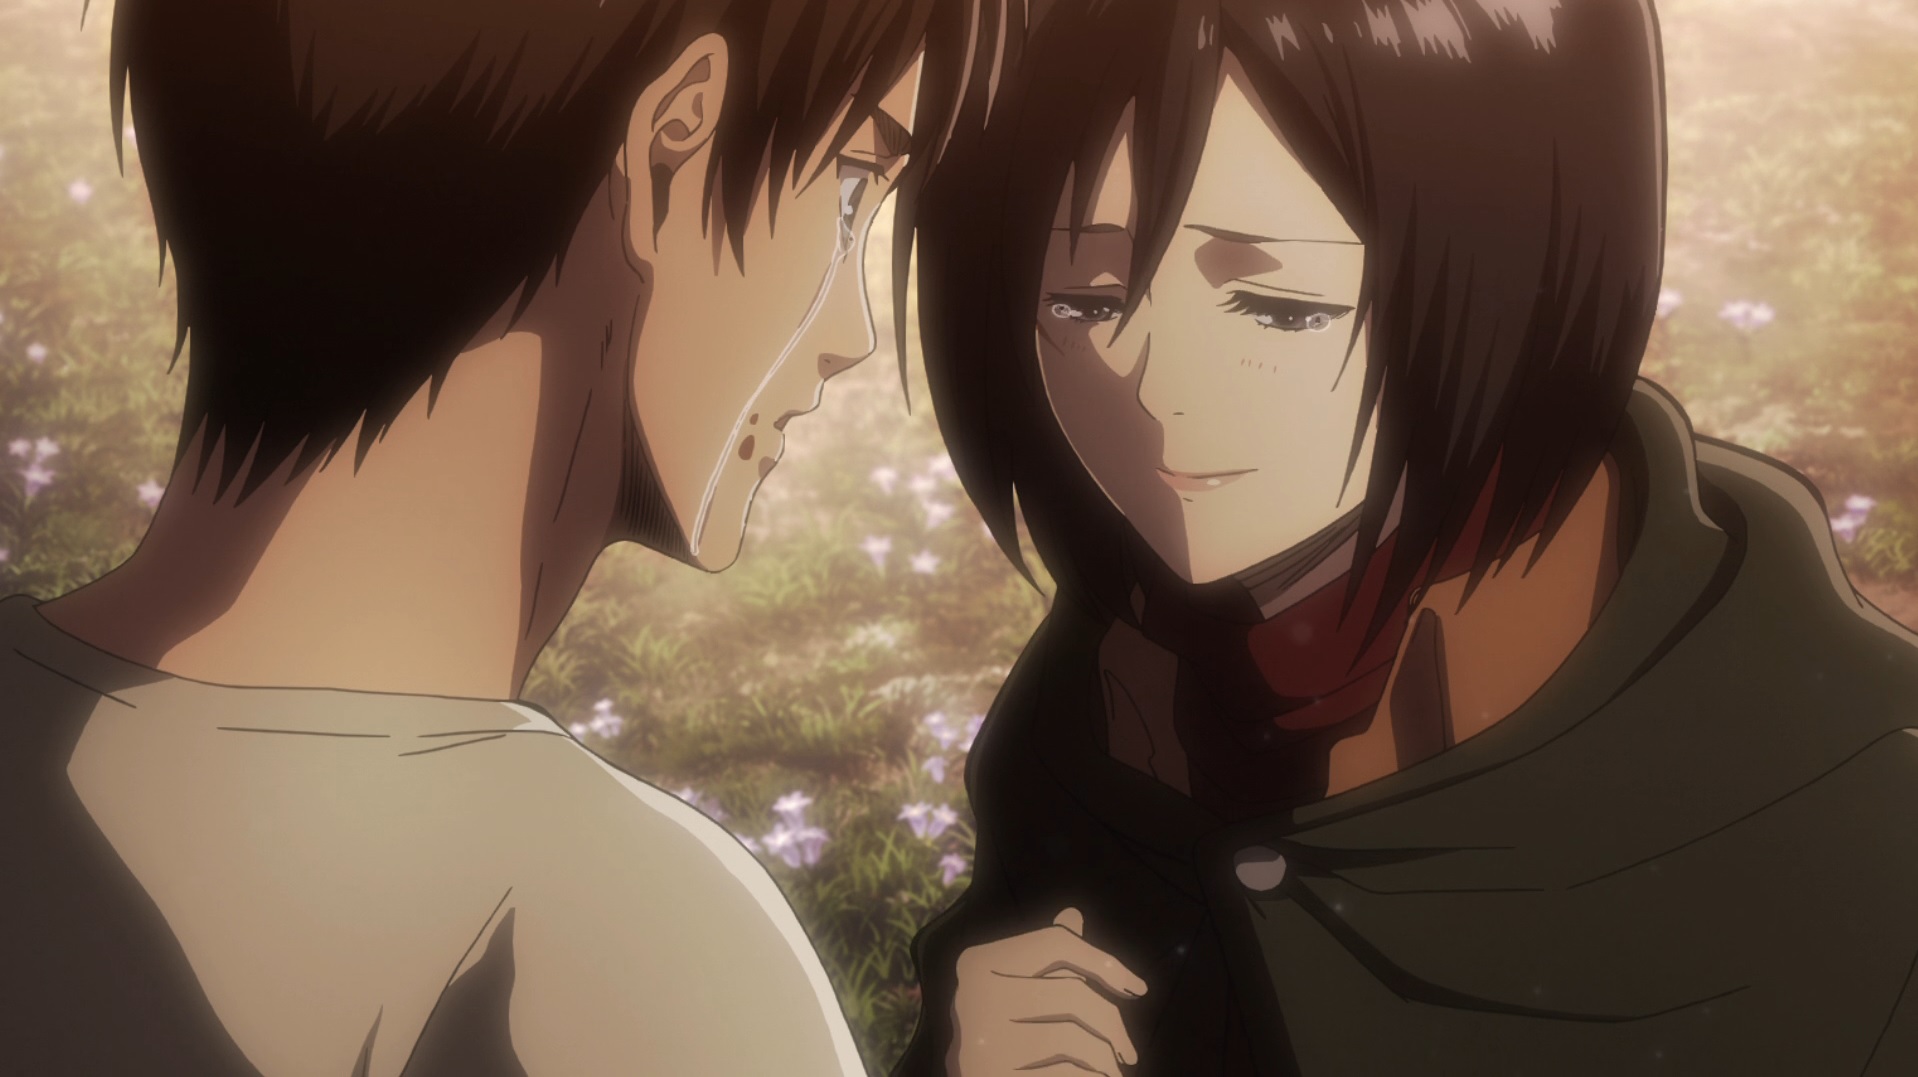 Werden Eren und Mikasa zusammen enden? Oder wird Eren Historia heiraten?